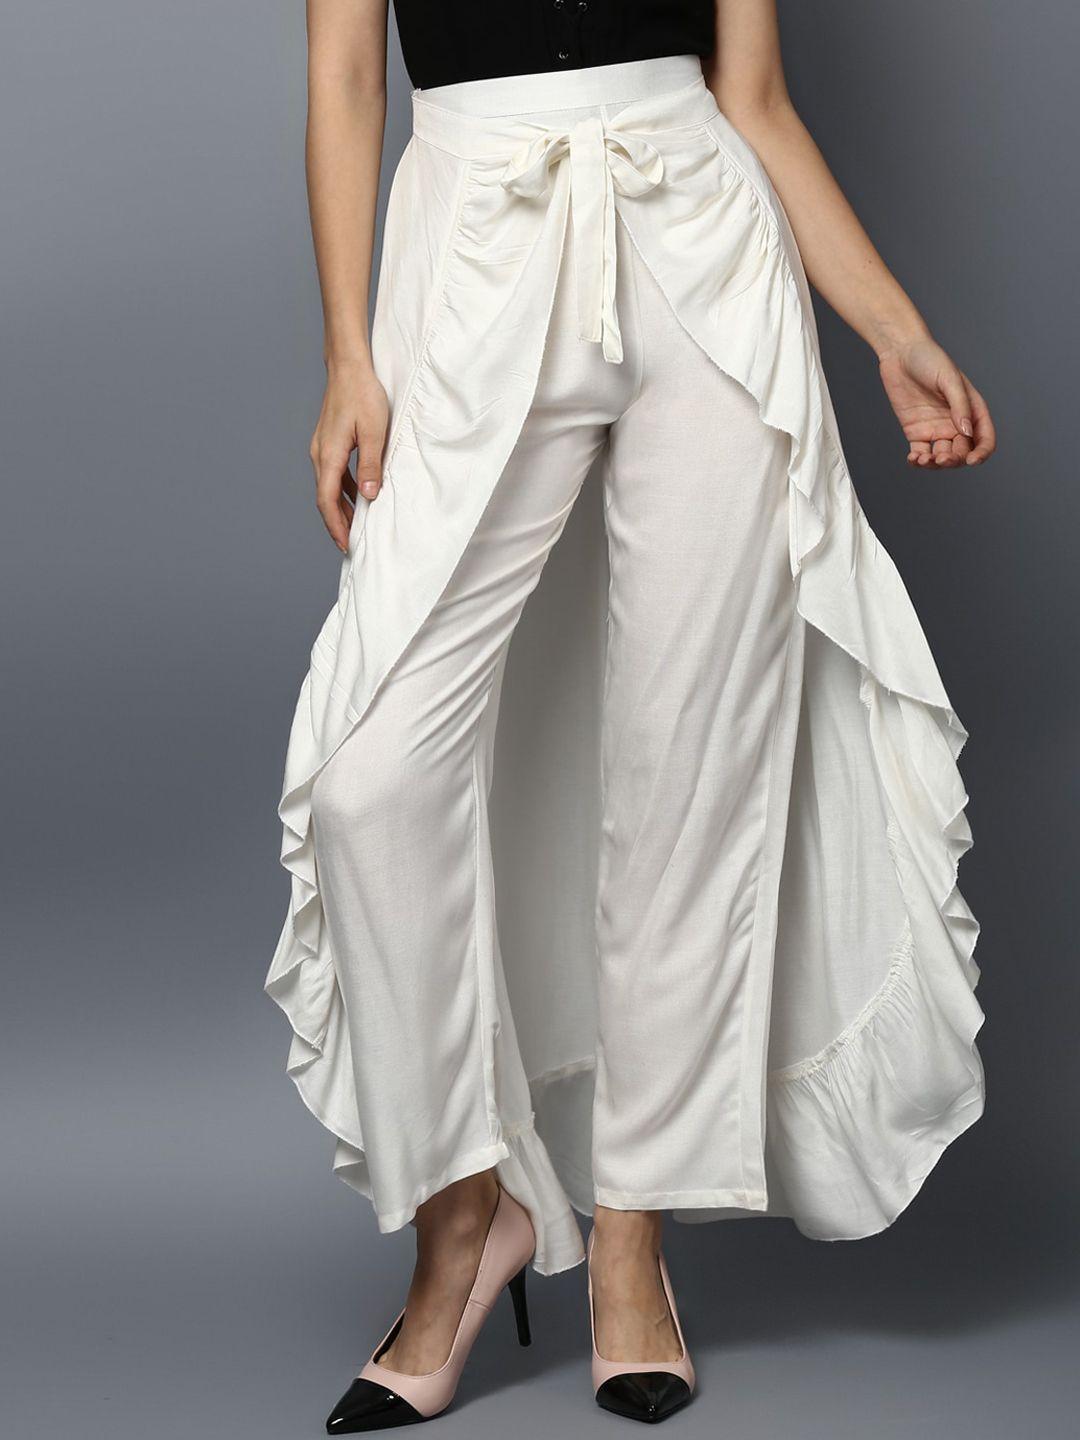 stylestone women white solid ruffled flared maxi skirt